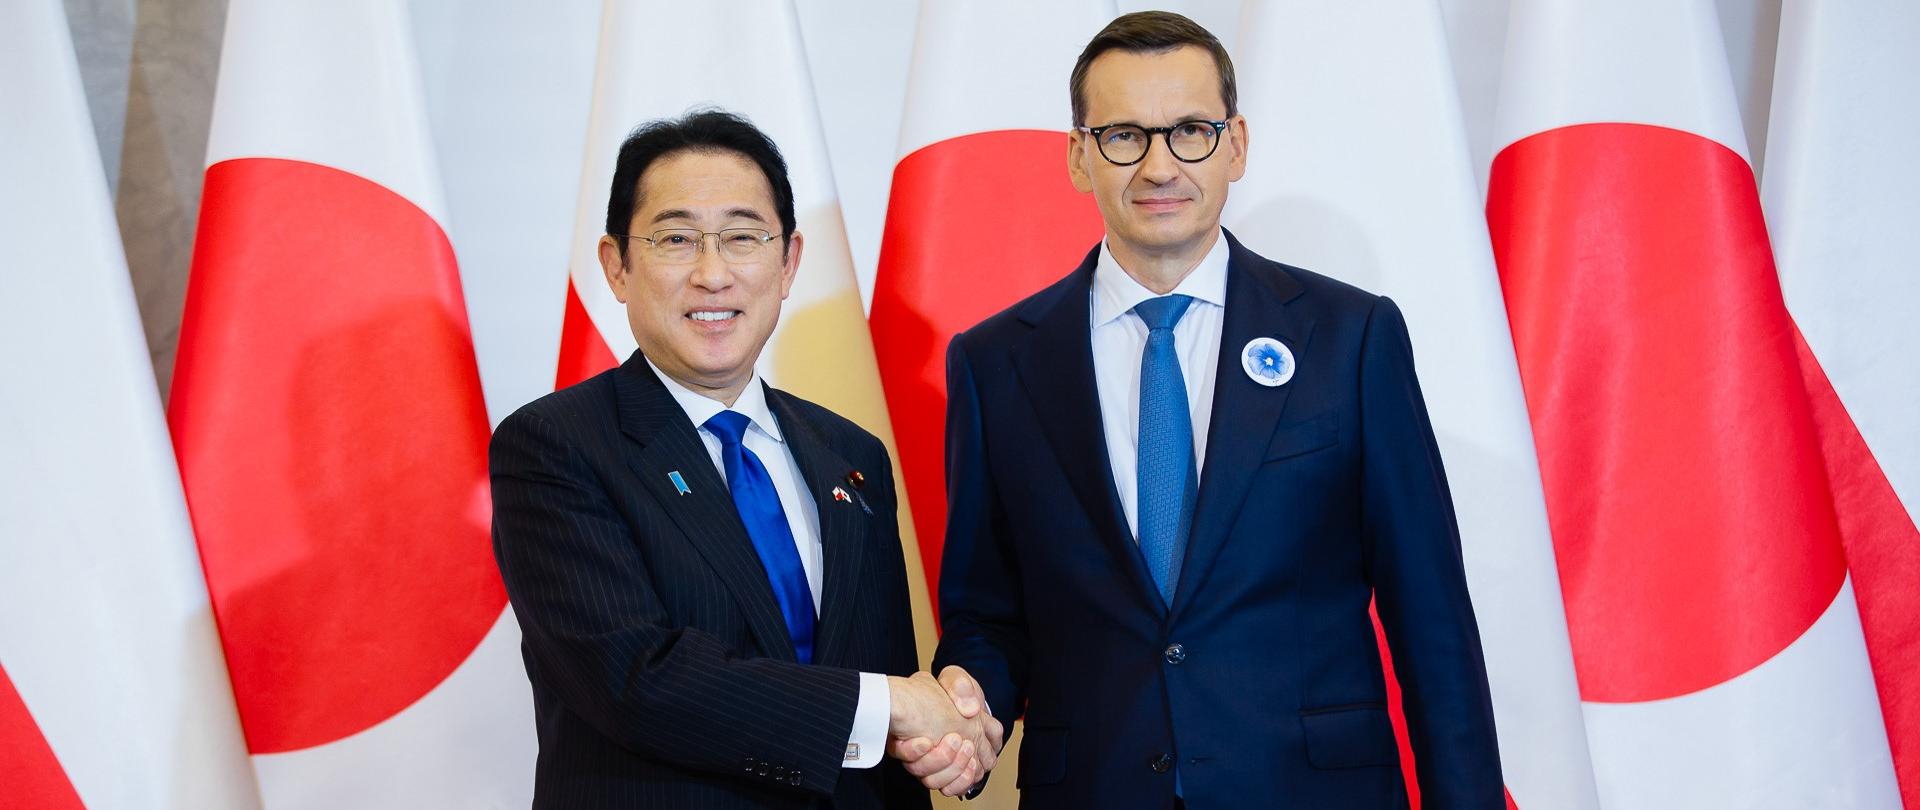 Premier Mateusz Morawiecki ściska dłoń premiera Japonii Fumio Kishidy podczas jego wizyty w Kancelarii Prezesa Rady Ministrów.